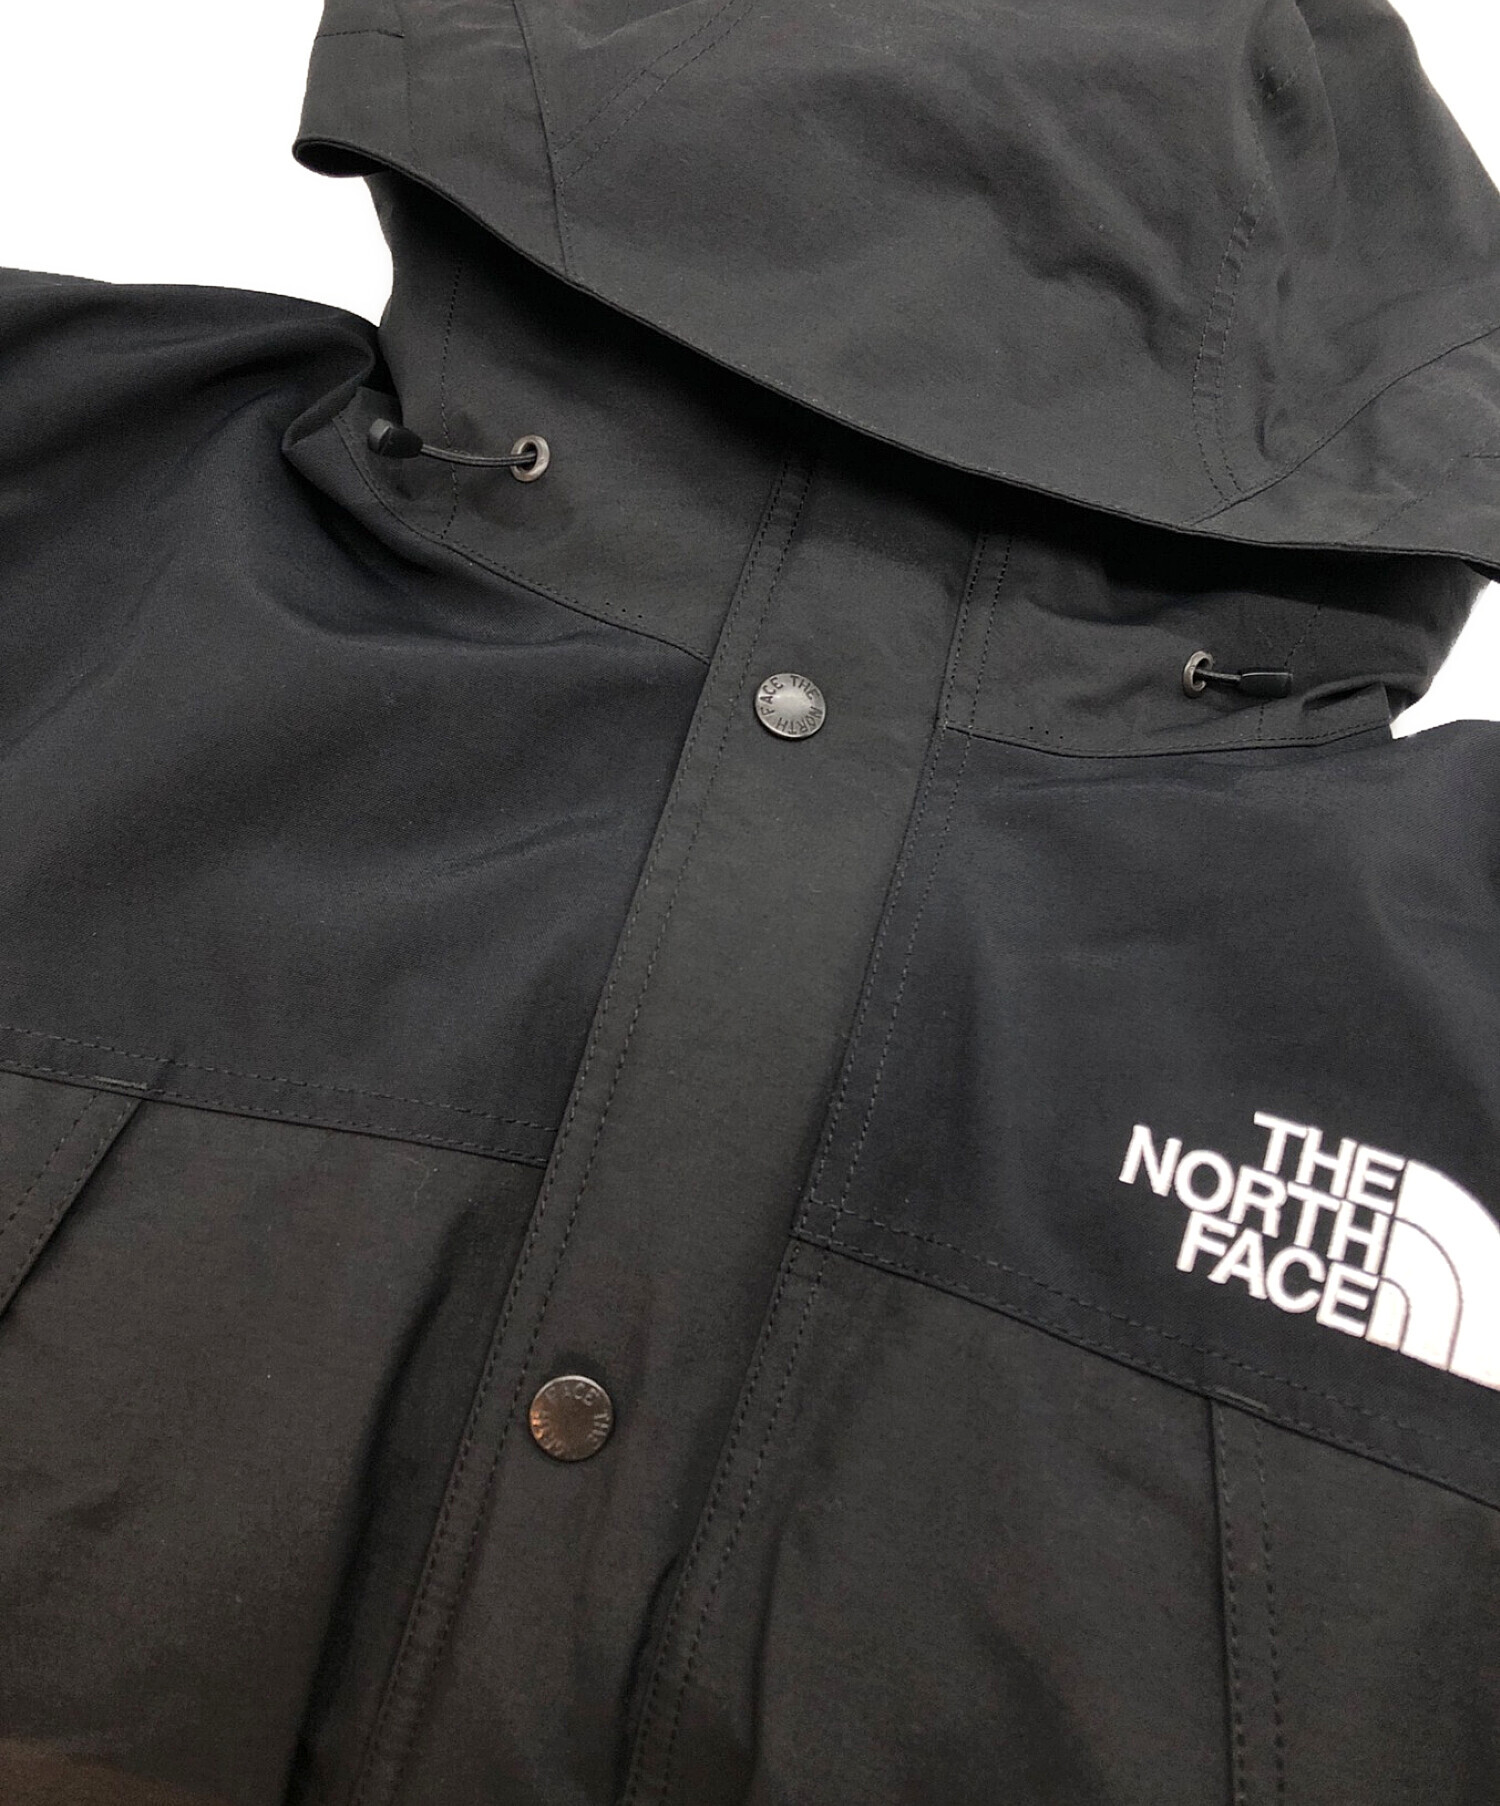 THE NORTH FACE (ザ ノース フェイス) Mountain Down Jacket/マウンテンダウンジャケット ブラック  サイズ:SIZE XL